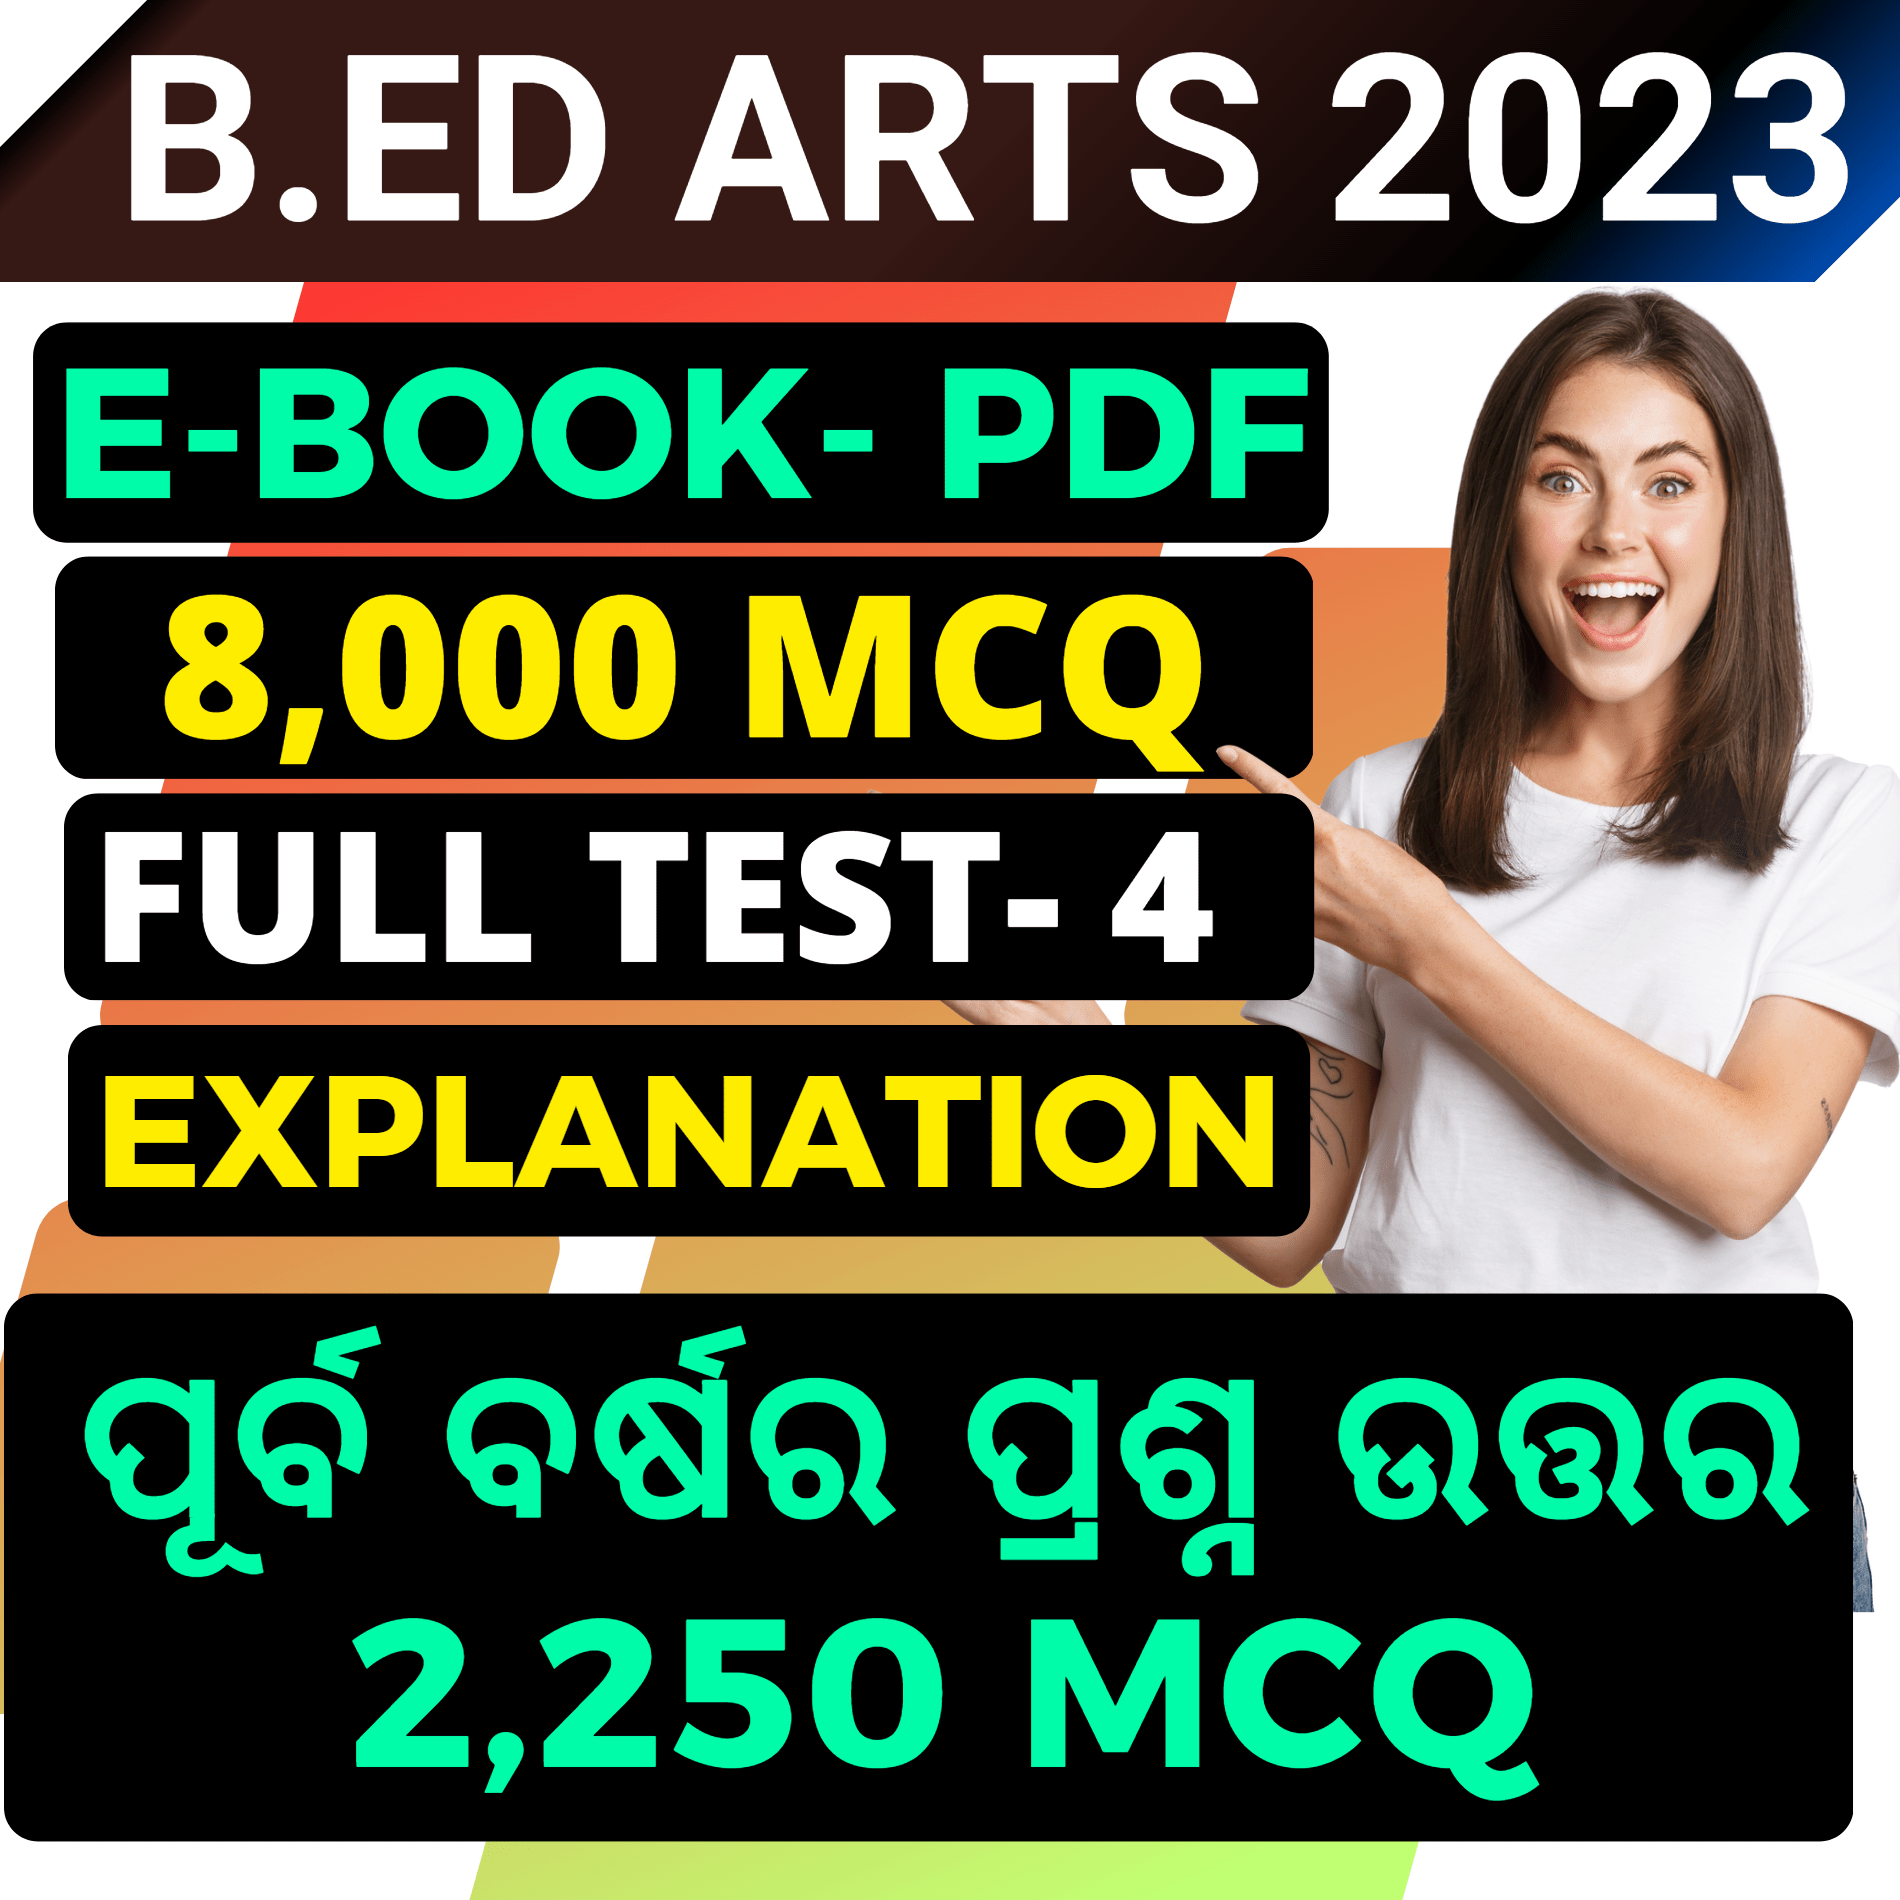 Odisha Bed Apply 2022